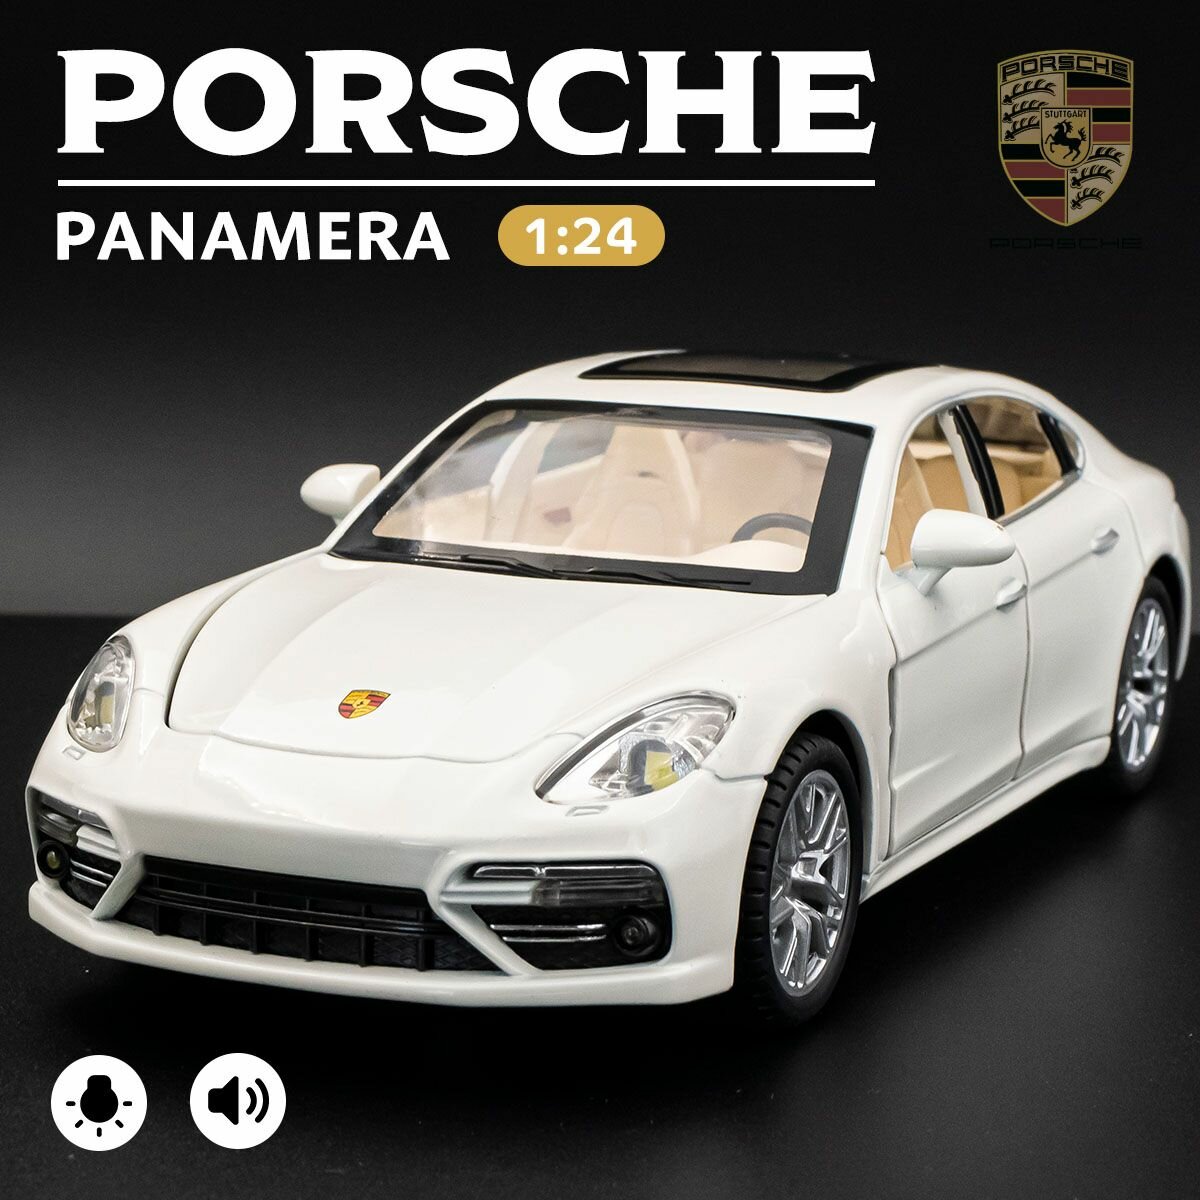 Детская машинка Porsche Panamera 1:24, модель машины Порше Панамера